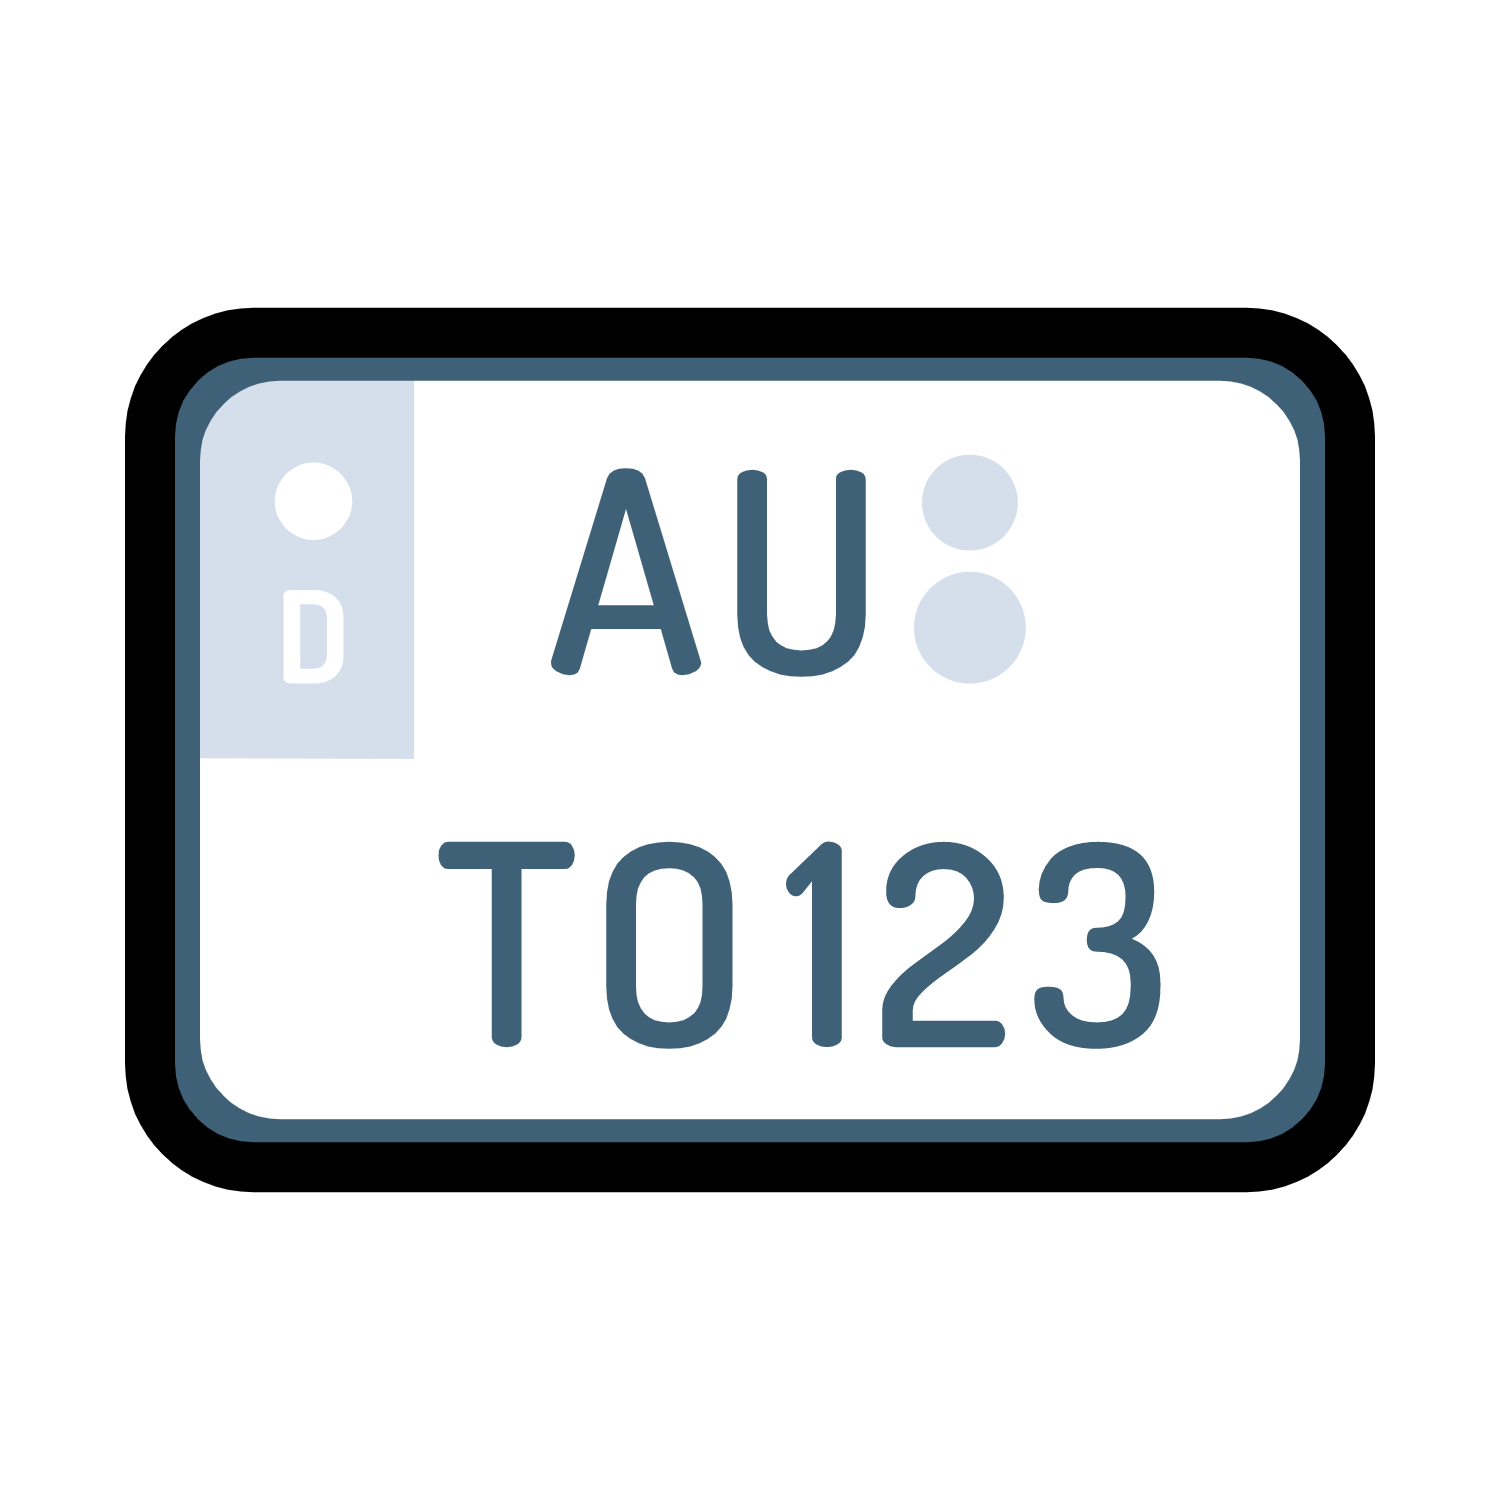 2x Kennzeichenhalter Stahl ROT Pulverbeschichtet für DEUTSCHLAND und EU  (Kennzeichen der Größe 520mm x 110mm) Nummernschildhalter  Kennzeichenhalterung